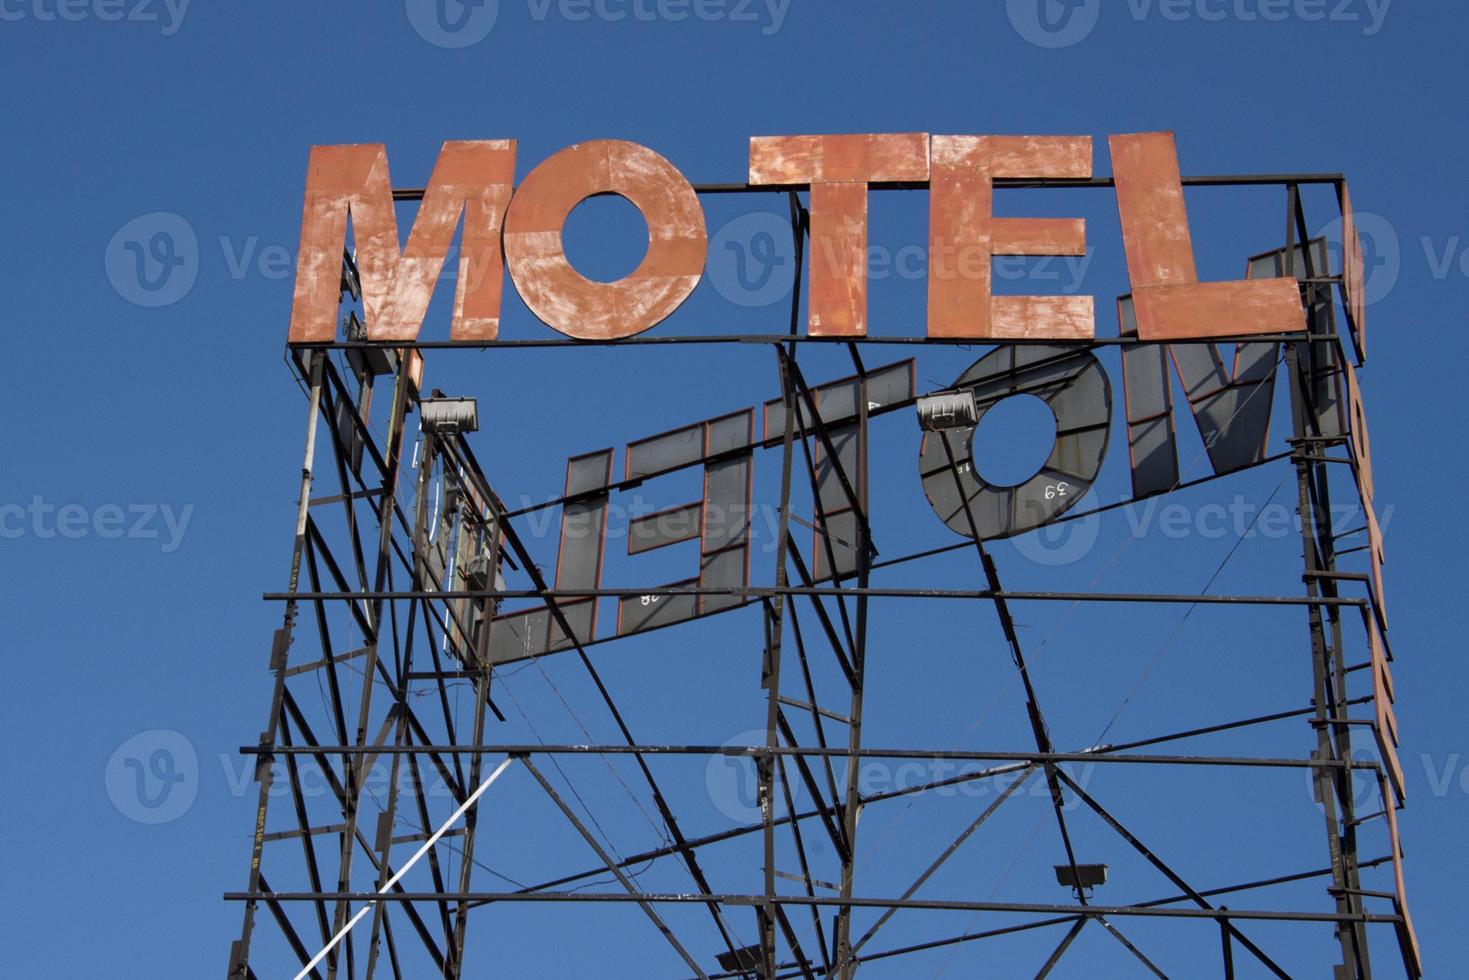 letrero oxidado de motel en el fondo del cielo azul foto